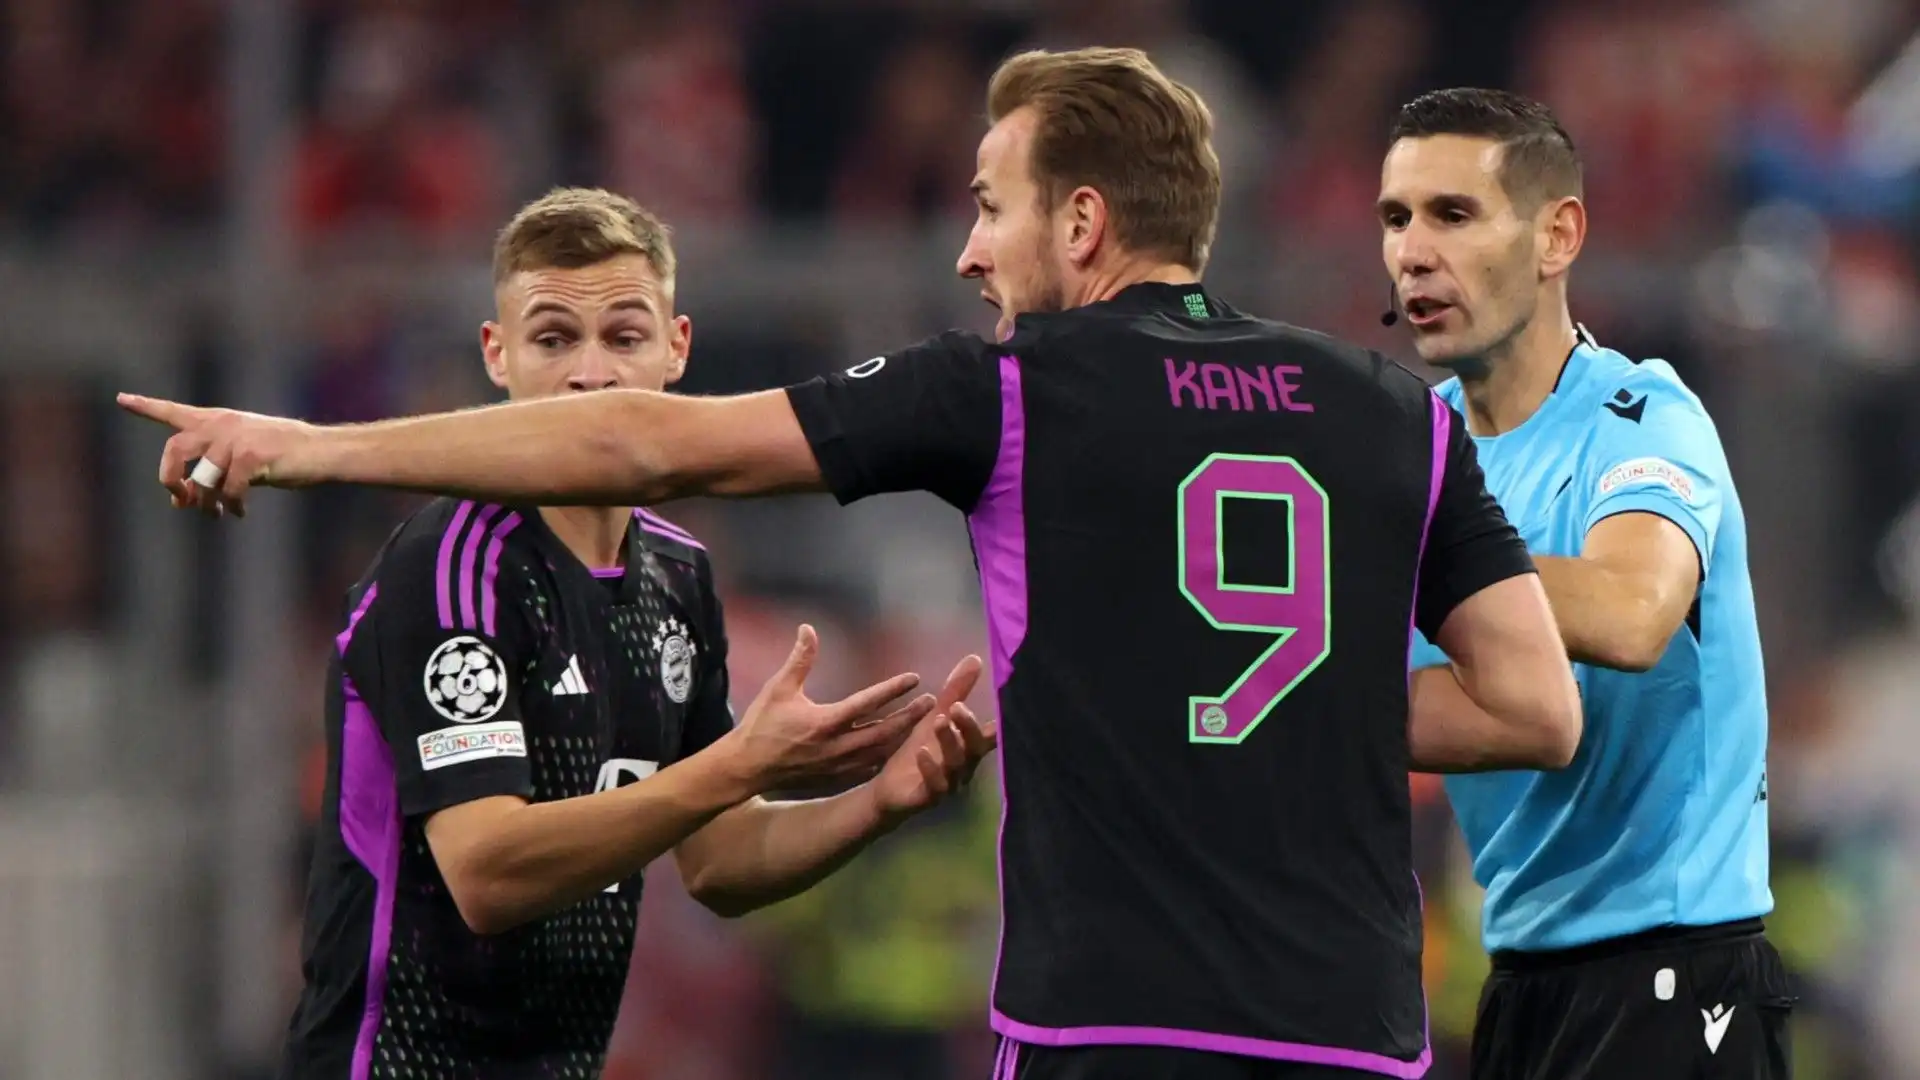 Finora con il Bayern Monaco Harry Kane ha segnato 21 gol in 16 partite